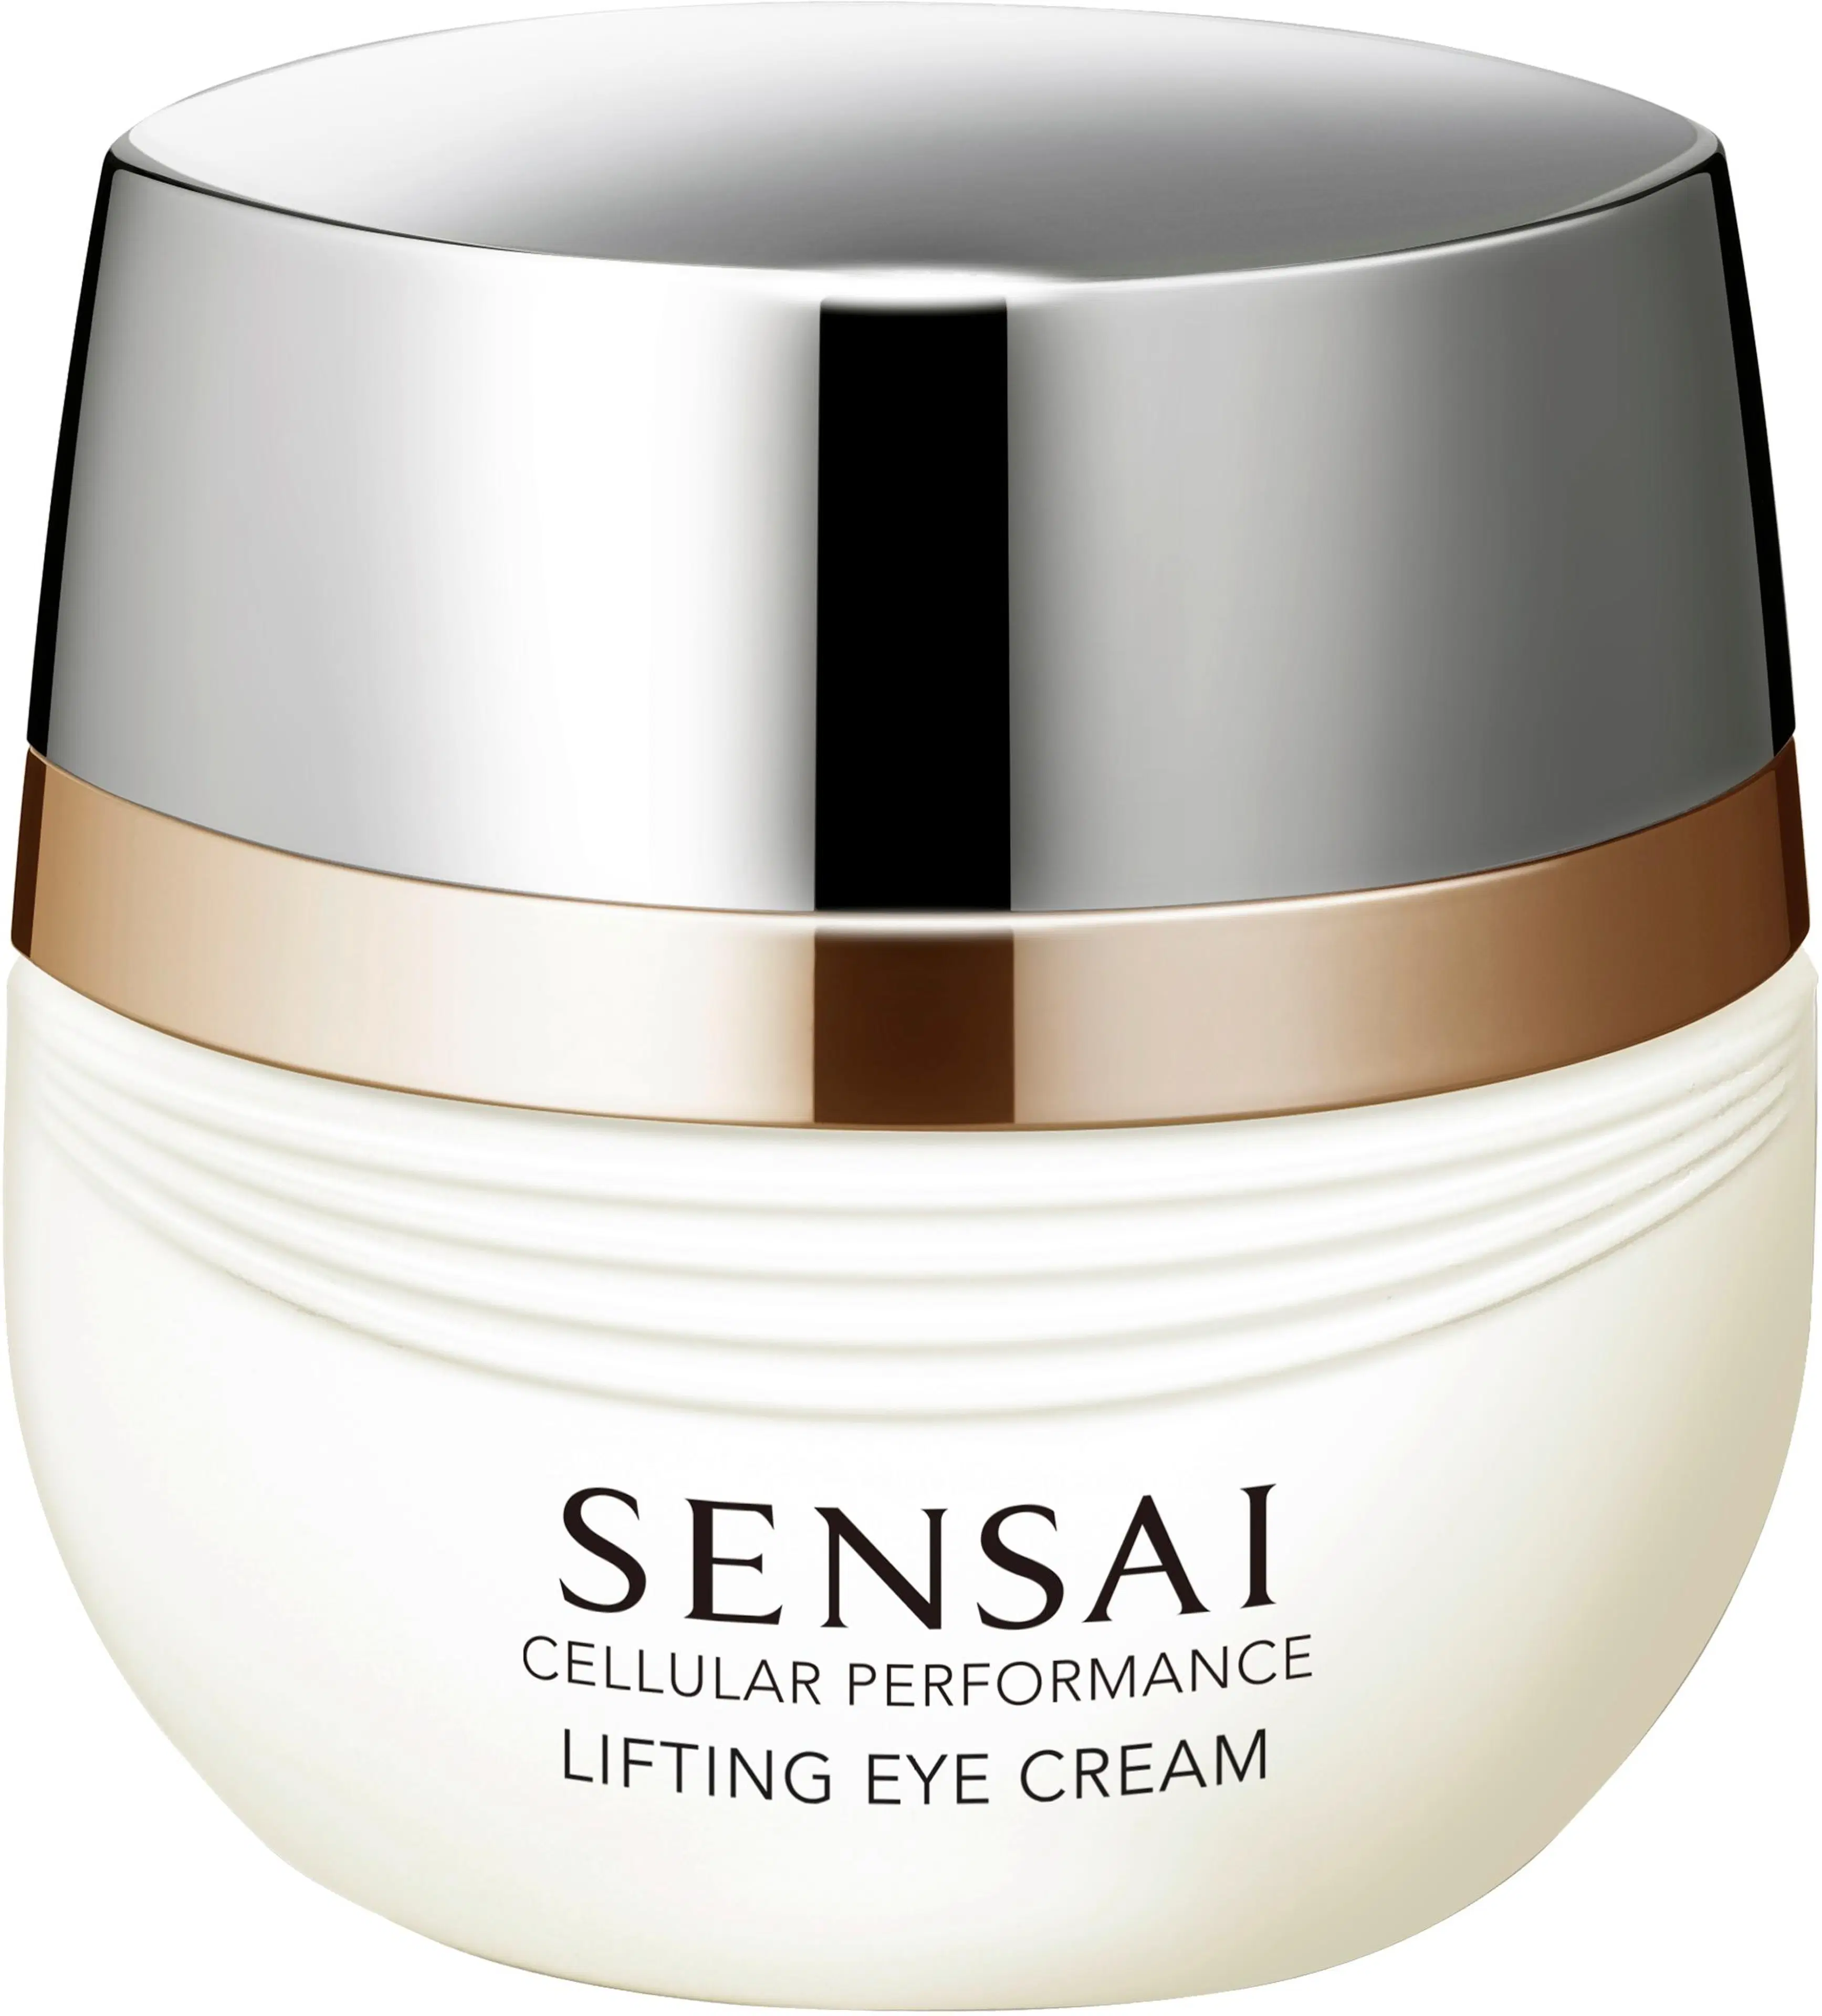 SENSAI Cellular Performance Lifting Eye Cream silmänympärysvoide 15 ml